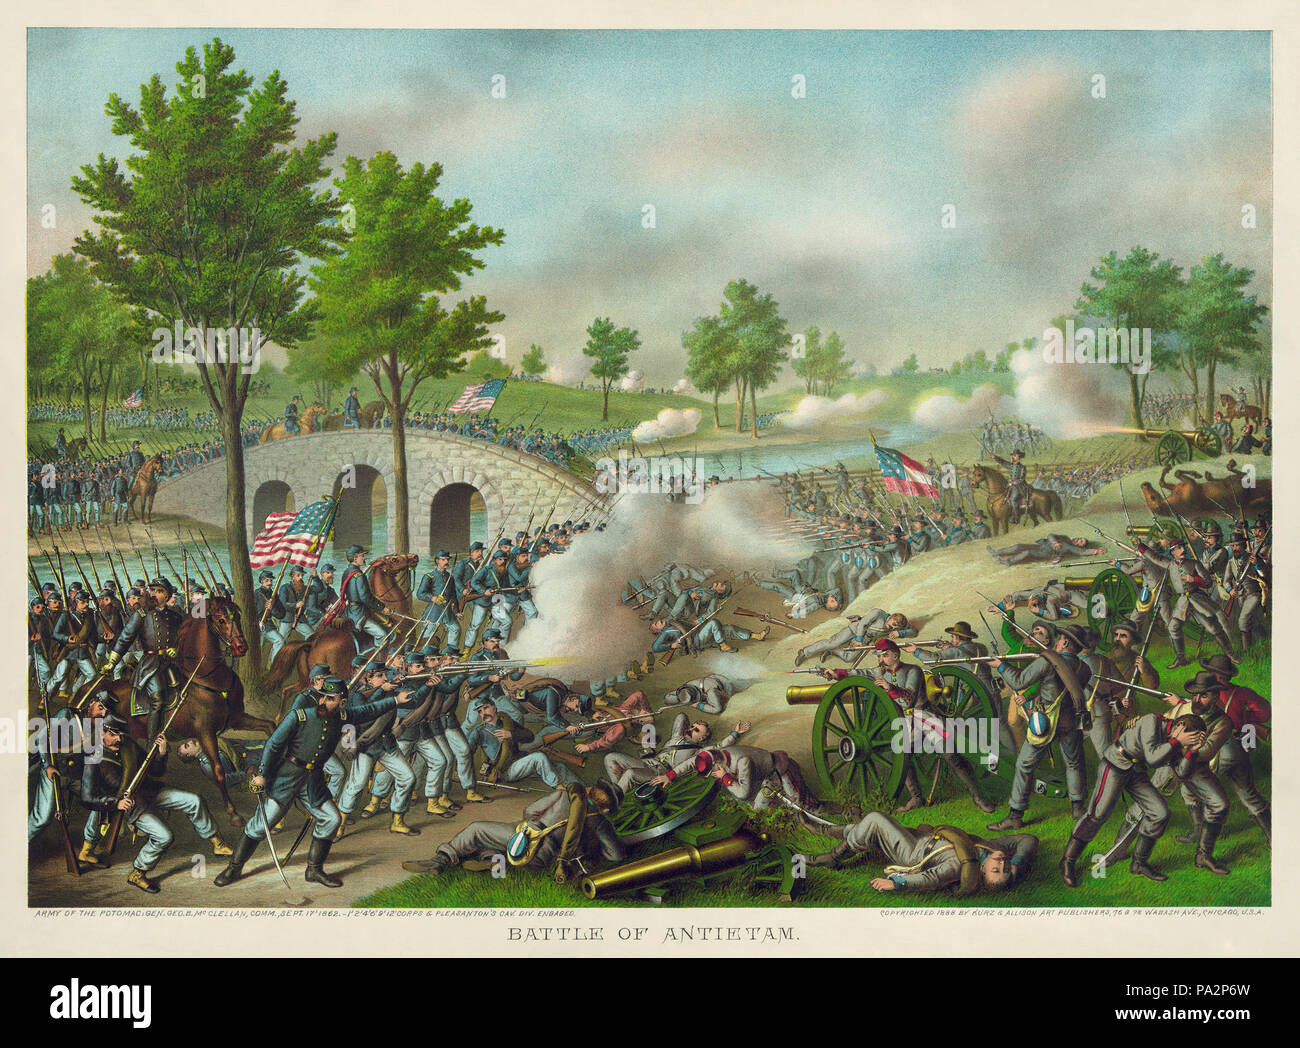 . English: 'Battle of Antietam. Army of the Potomac: Gen. Geo. B. McClellan, comm., Sept. 17' 1862. - 1' 2' 4' 6' 9' 12' Corps & Pleasanton's cav. div. engaged.' Color lithograph. Français : « La Bataille d'Antietam (17 septembre 1862). Armée du Potomac: Le général B. McClellan, commandant les 1er, 2e, 4e, 6e, 9e et 12e divisions de cavalerie de Corps & Pleasanton. » Lithographie en couleurs. circa 1888 188 Battle of Antietam2 0.5 Stock Photo